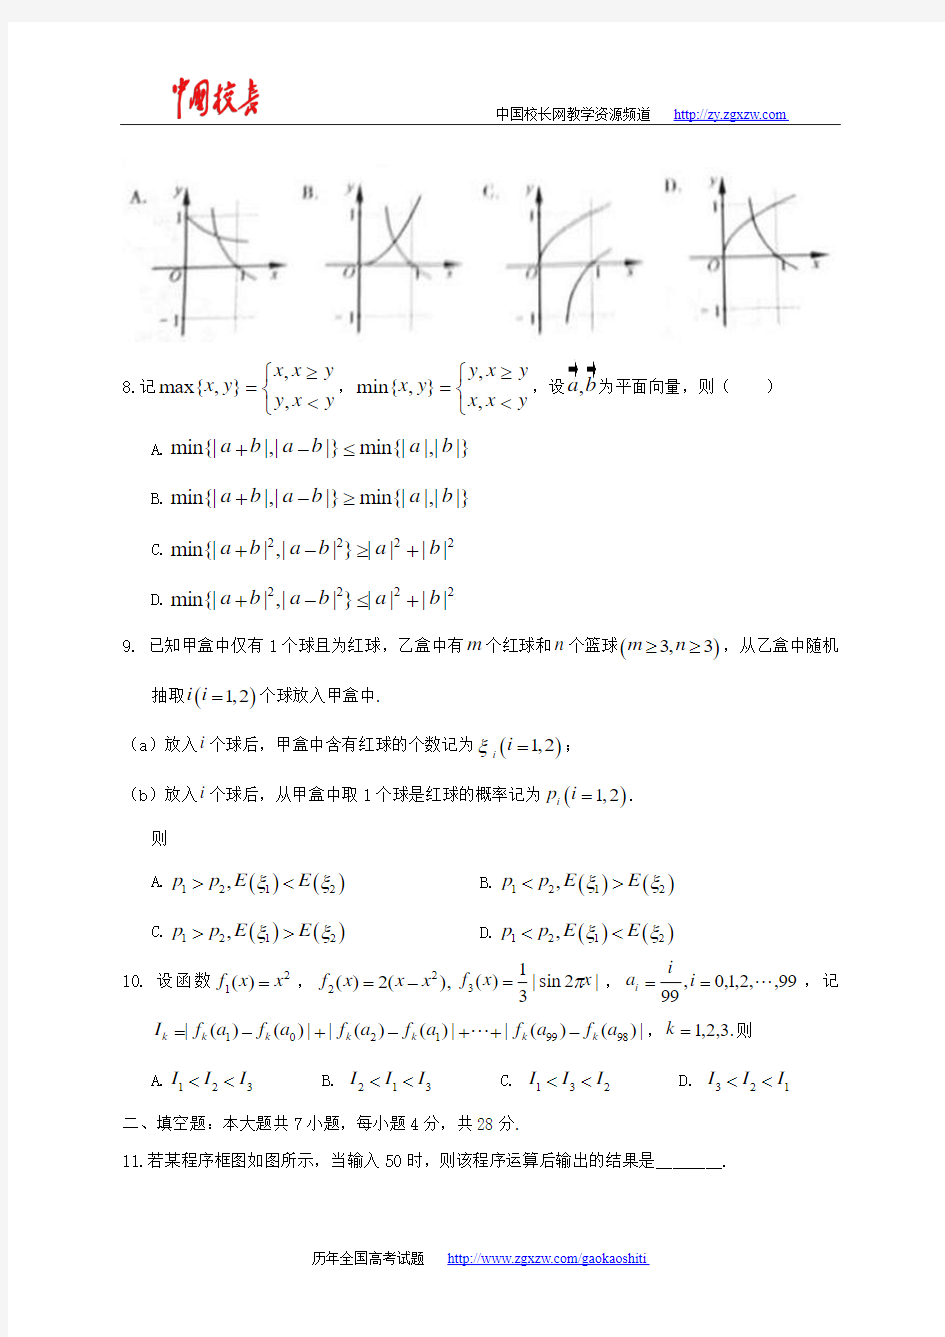 2014年全国高考理科数学试题及答案-浙江卷